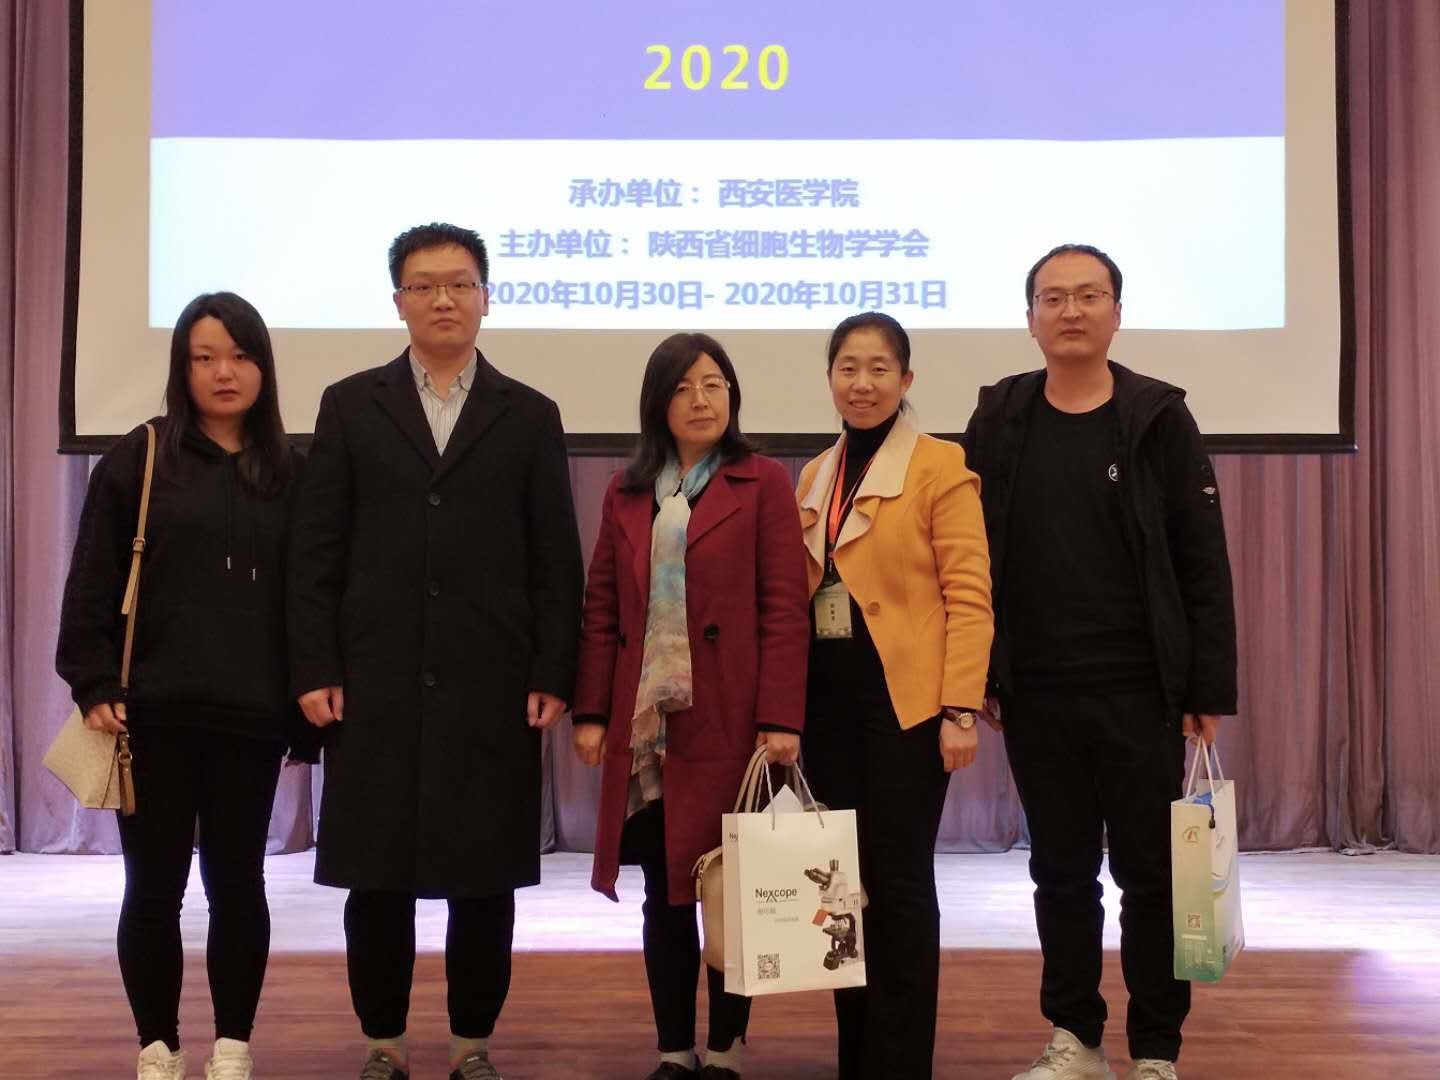 生命学院骞爱荣教授课题组参加“陕西省细胞生物学学会2020年年会”